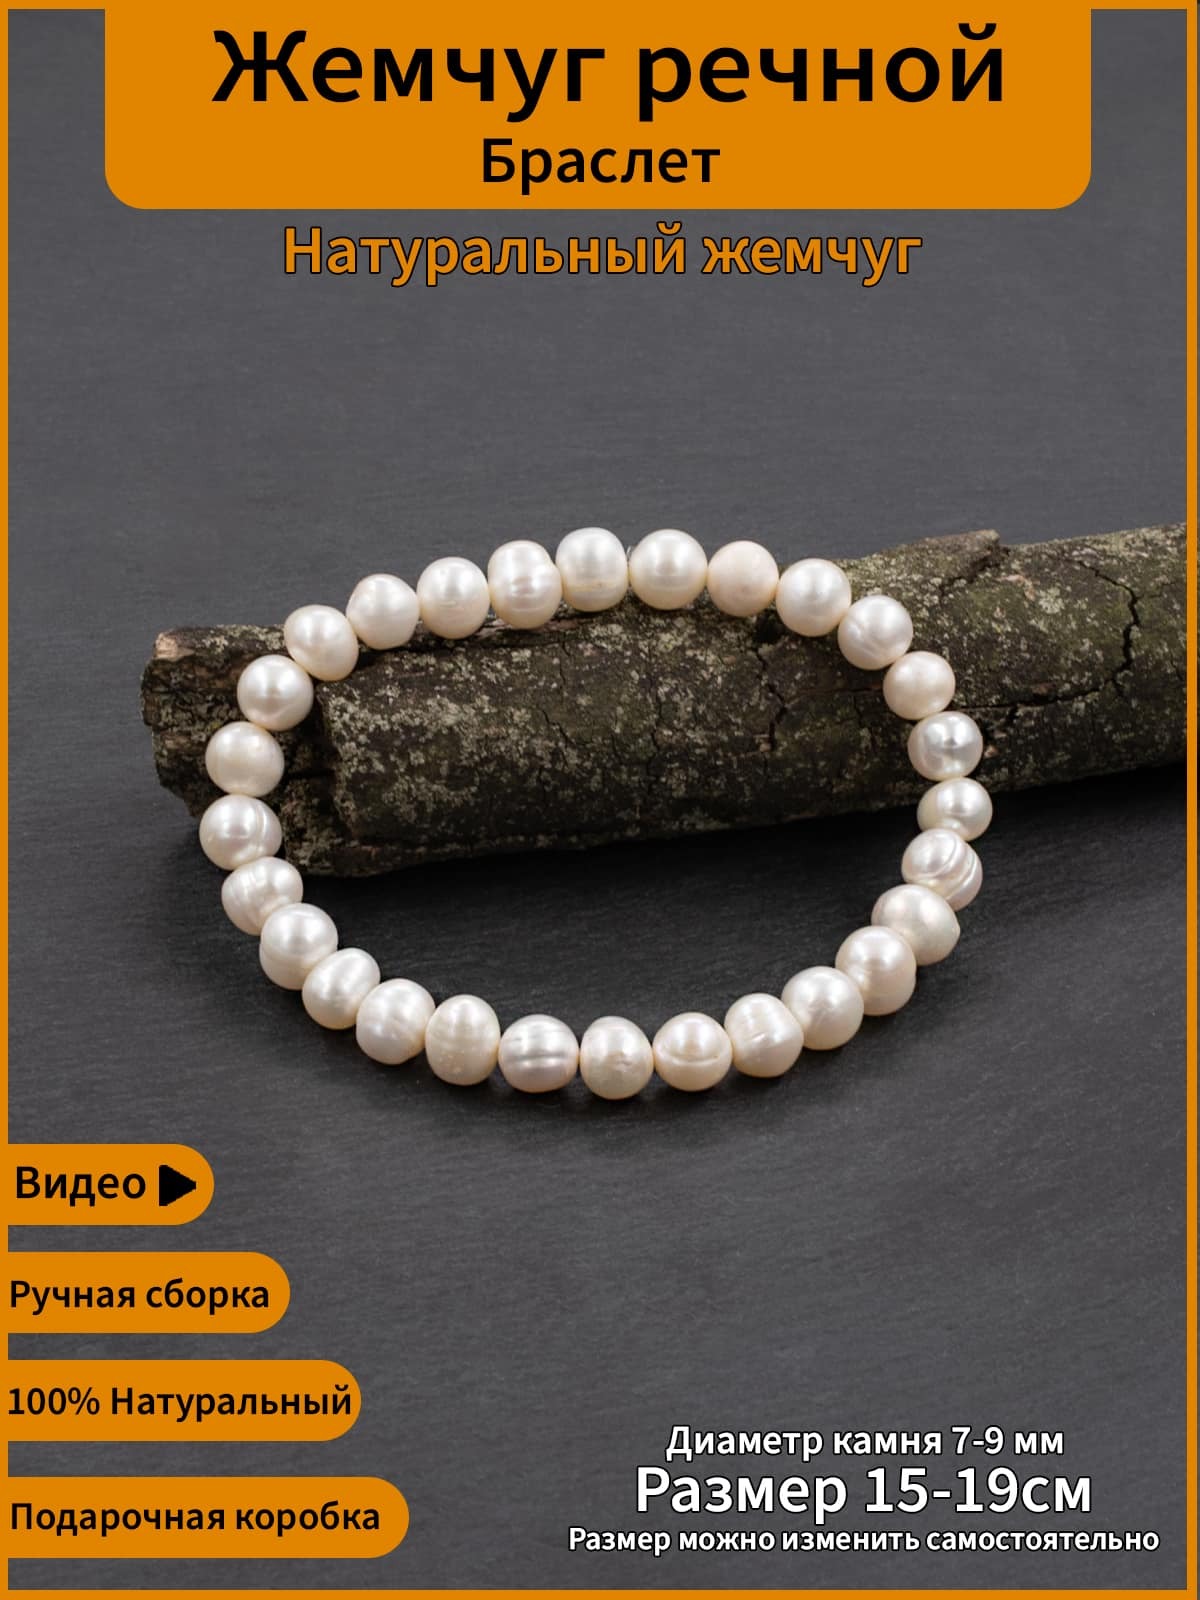 Браслет с жемчугом и миниатюрной ракушкой G — купить в интернет-магазине бижутерии slep-kostroma.ru